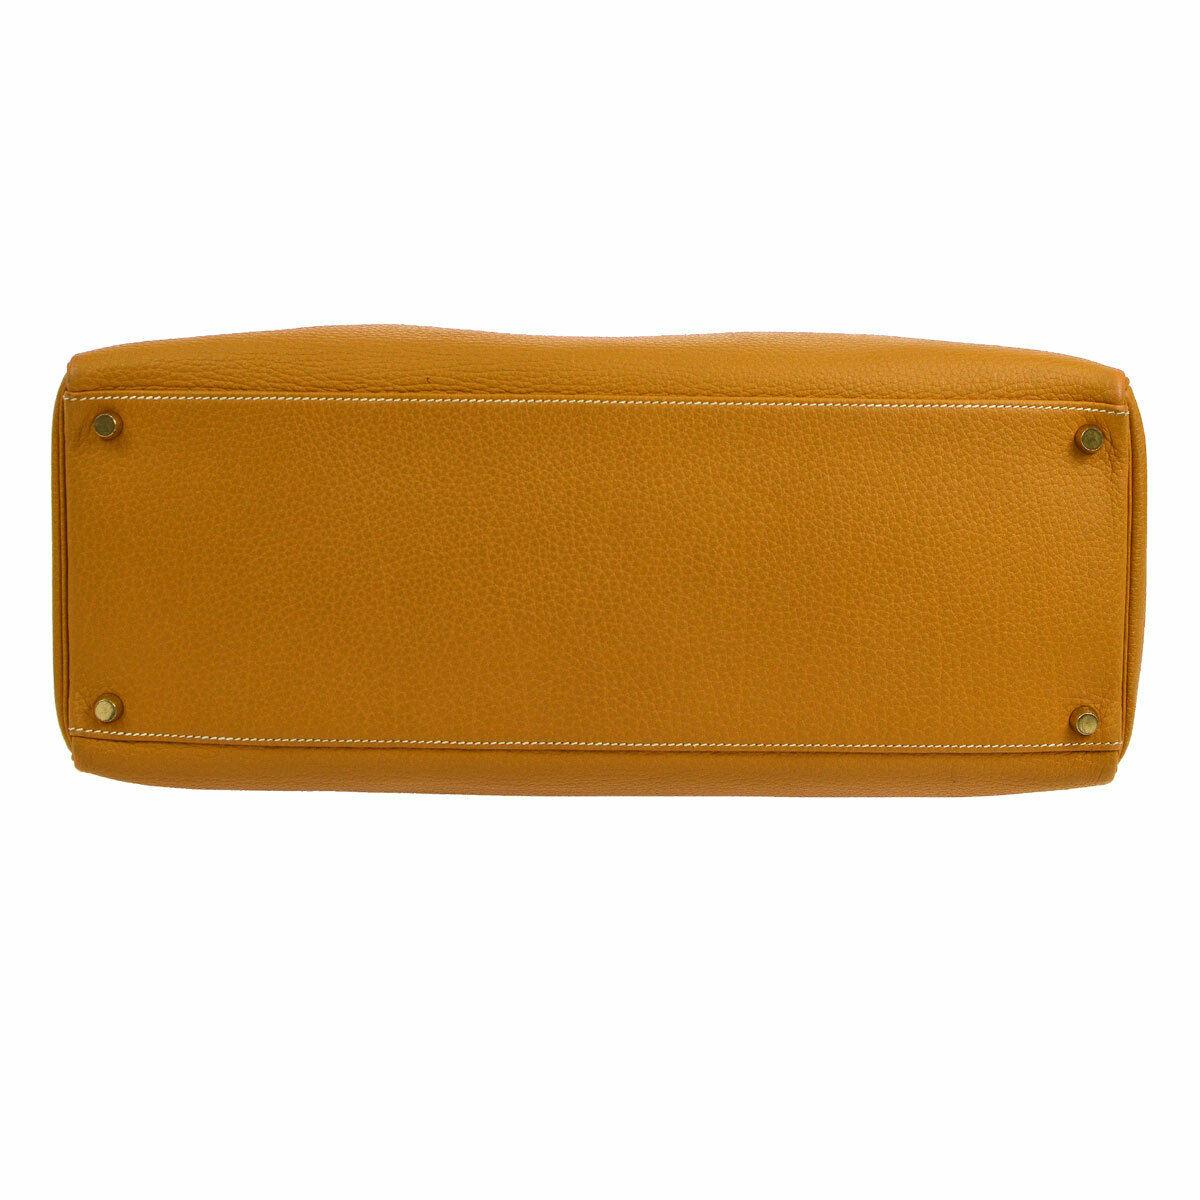 Brown Hermes Kelly 40 Mustard Leather Top Handle Satchel Carryall Tote Flap Bag